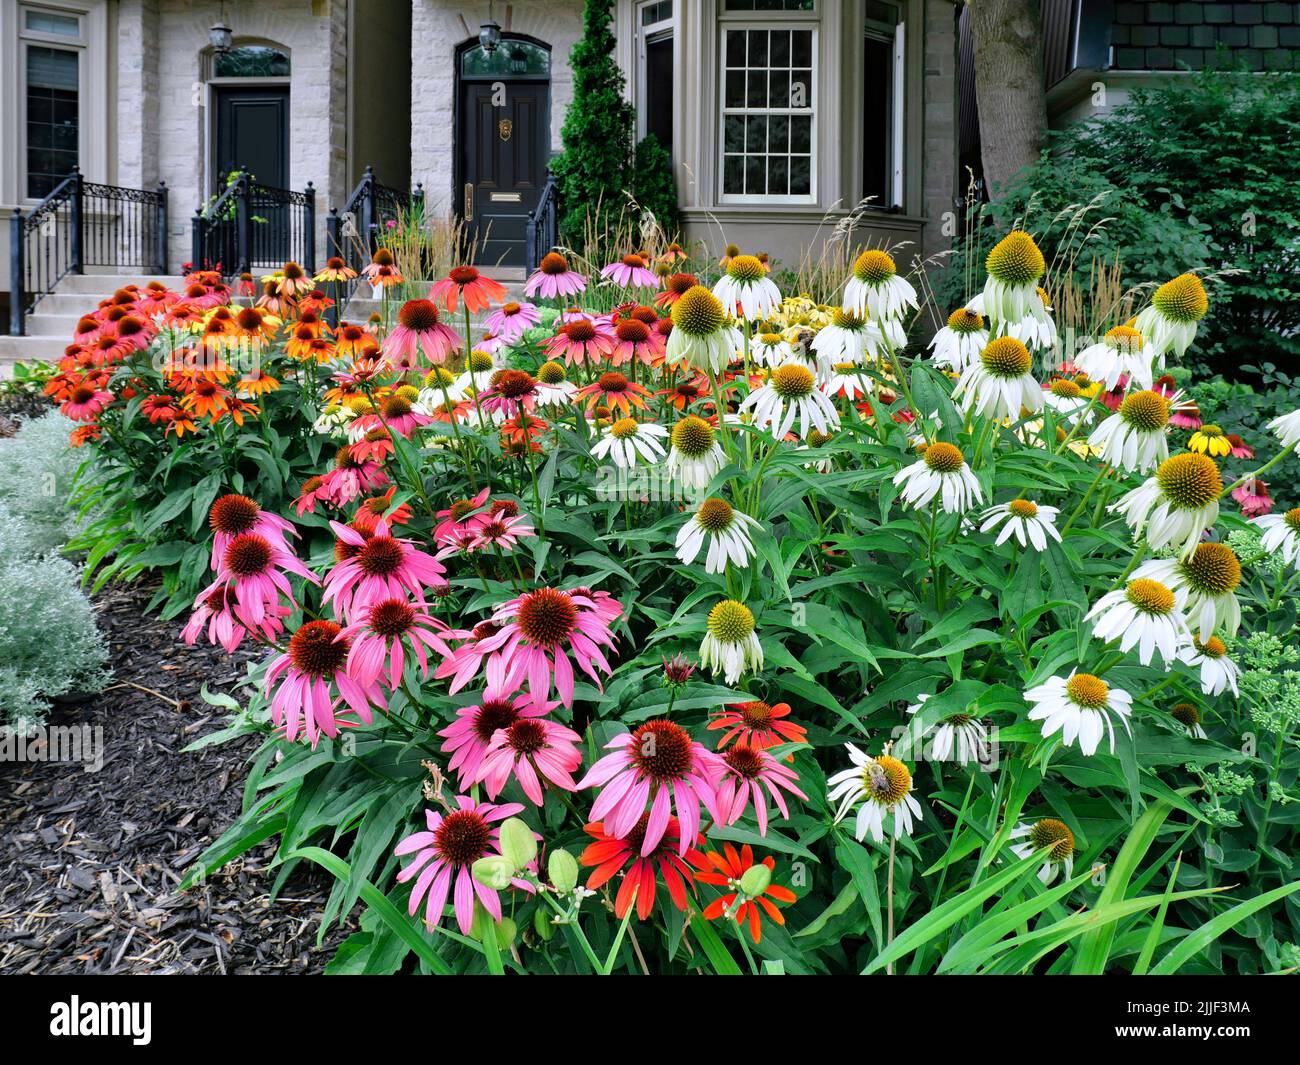 Jardin à la maison avec grande plantation de fleurs en cône dans diverses couleurs Banque D'Images